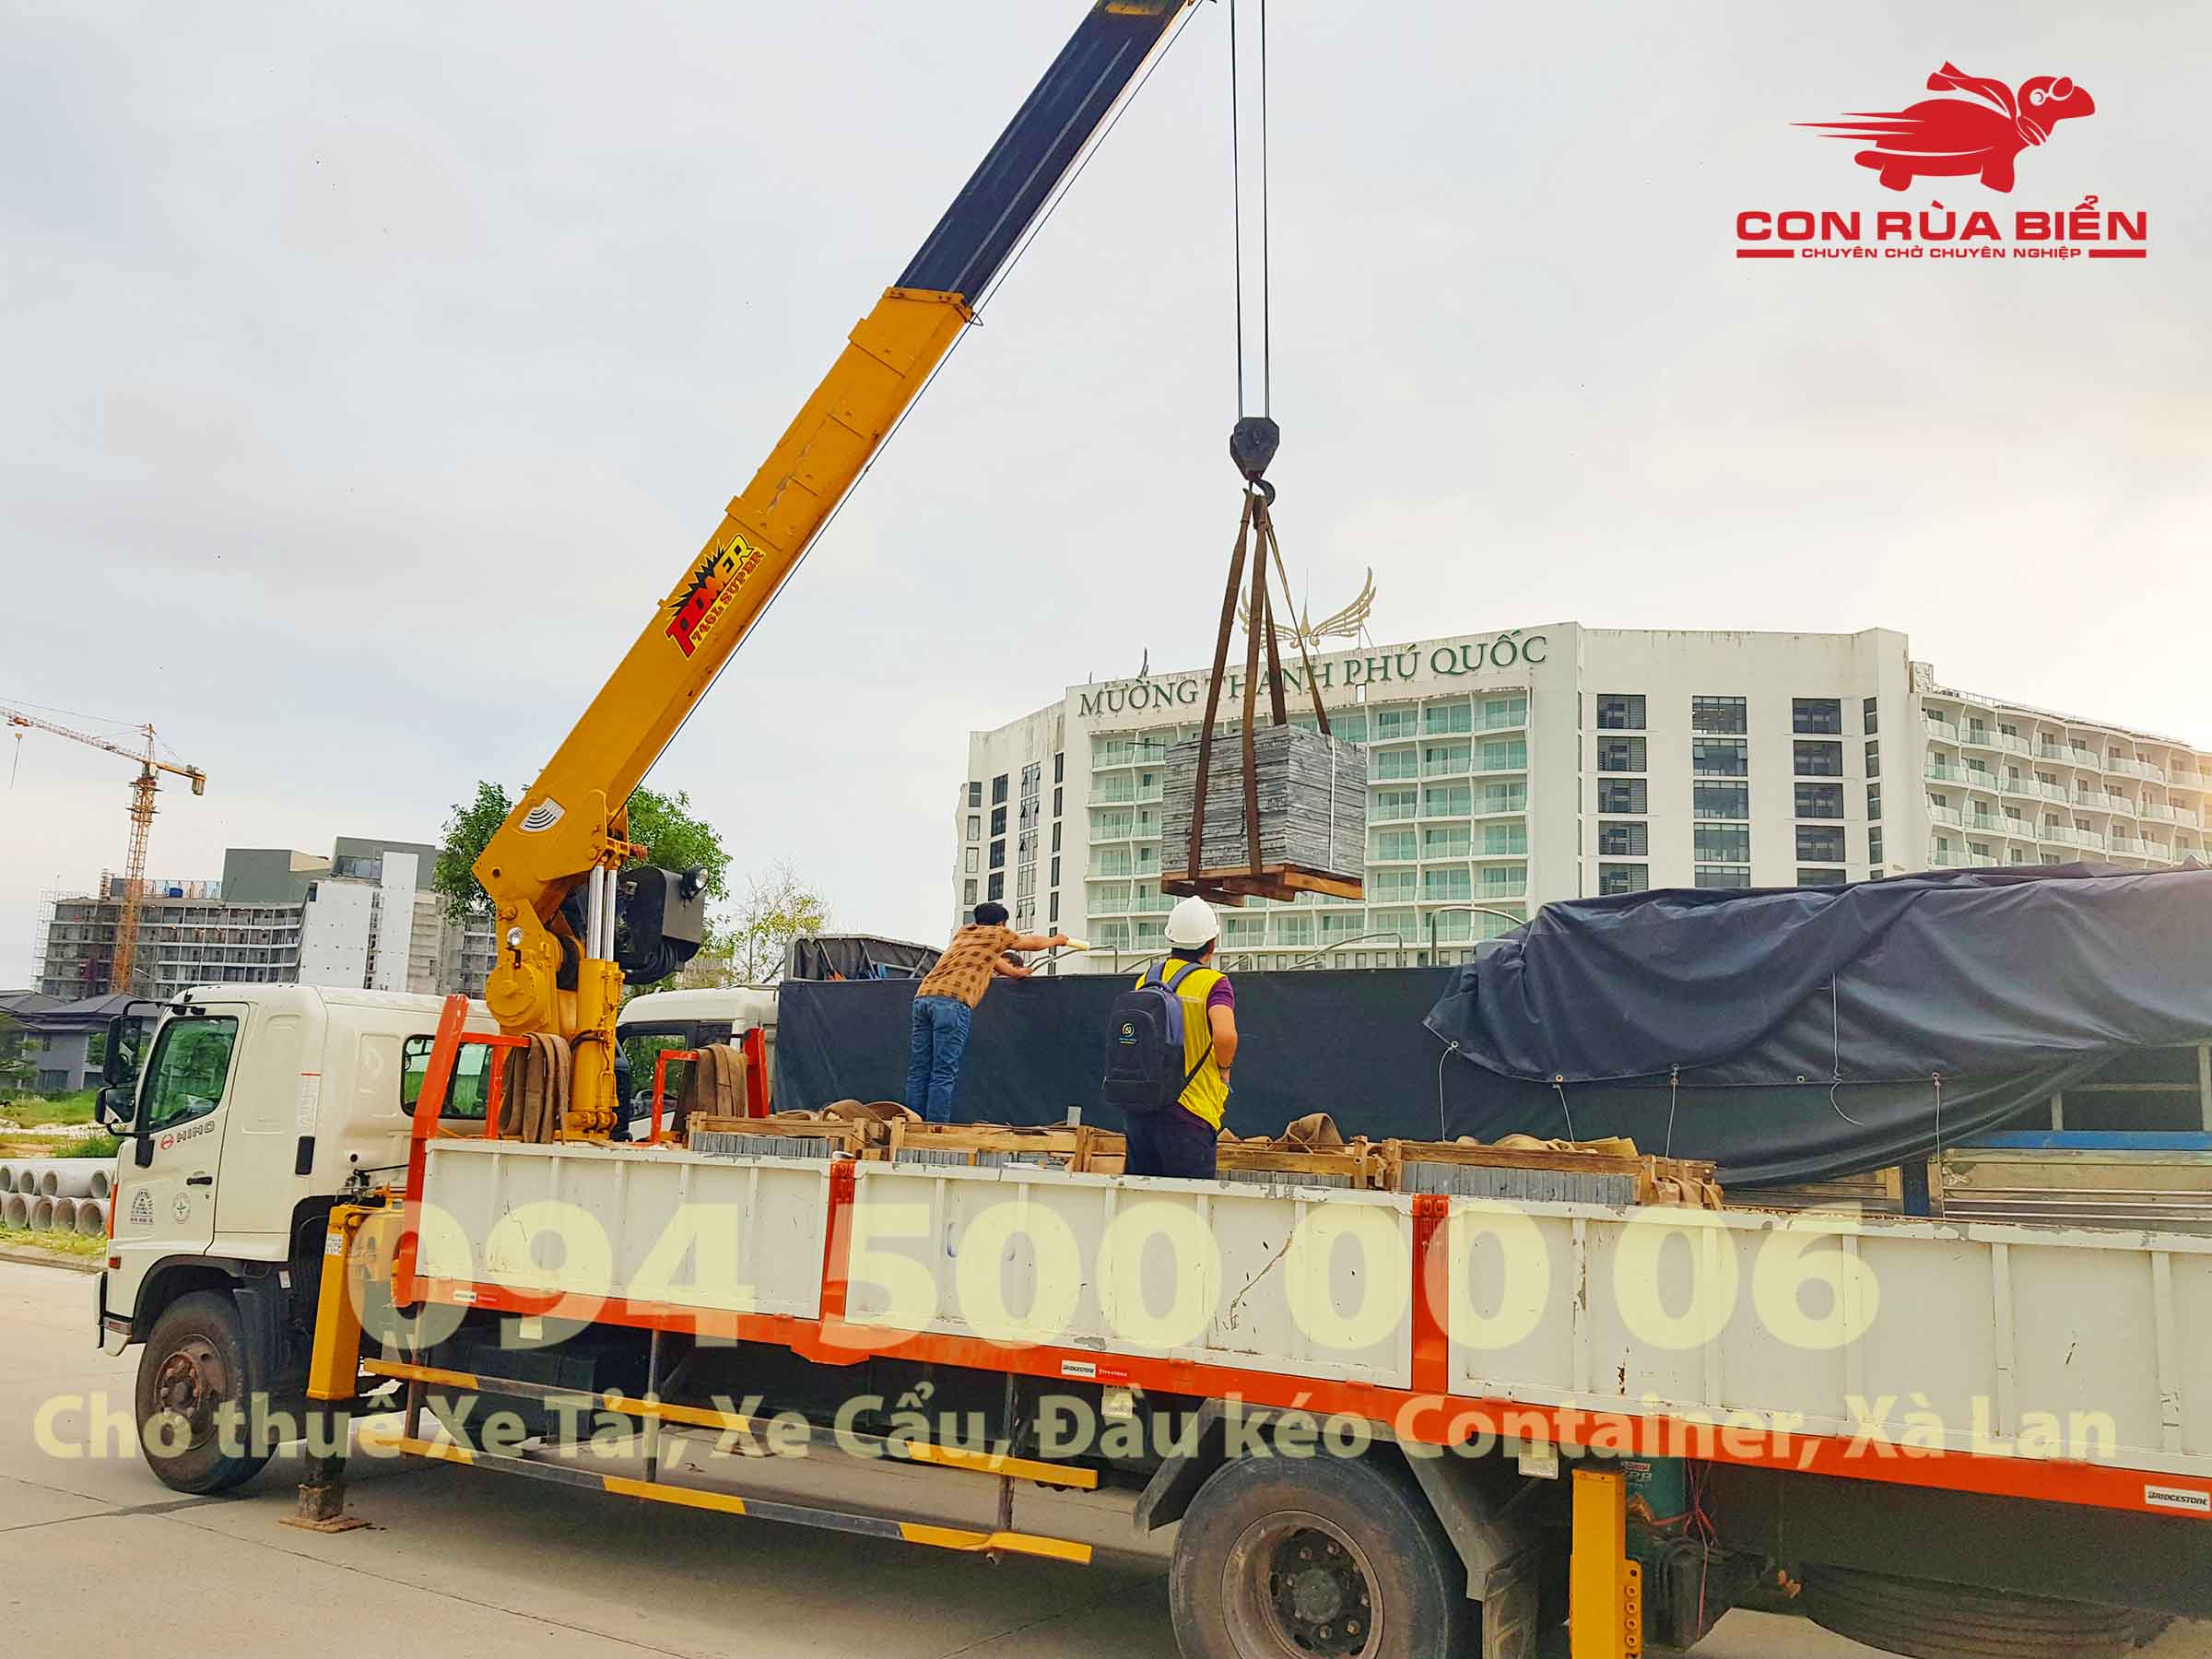 Chành xe Phú Quốc - Con Rùa Biển là đơn vị vận tải hàng hóa đang cung cấp dịch vụ Xe tải đi Phú Quốc Kiên Giang với nhiều hình thức đa dạng cho khách hàng.